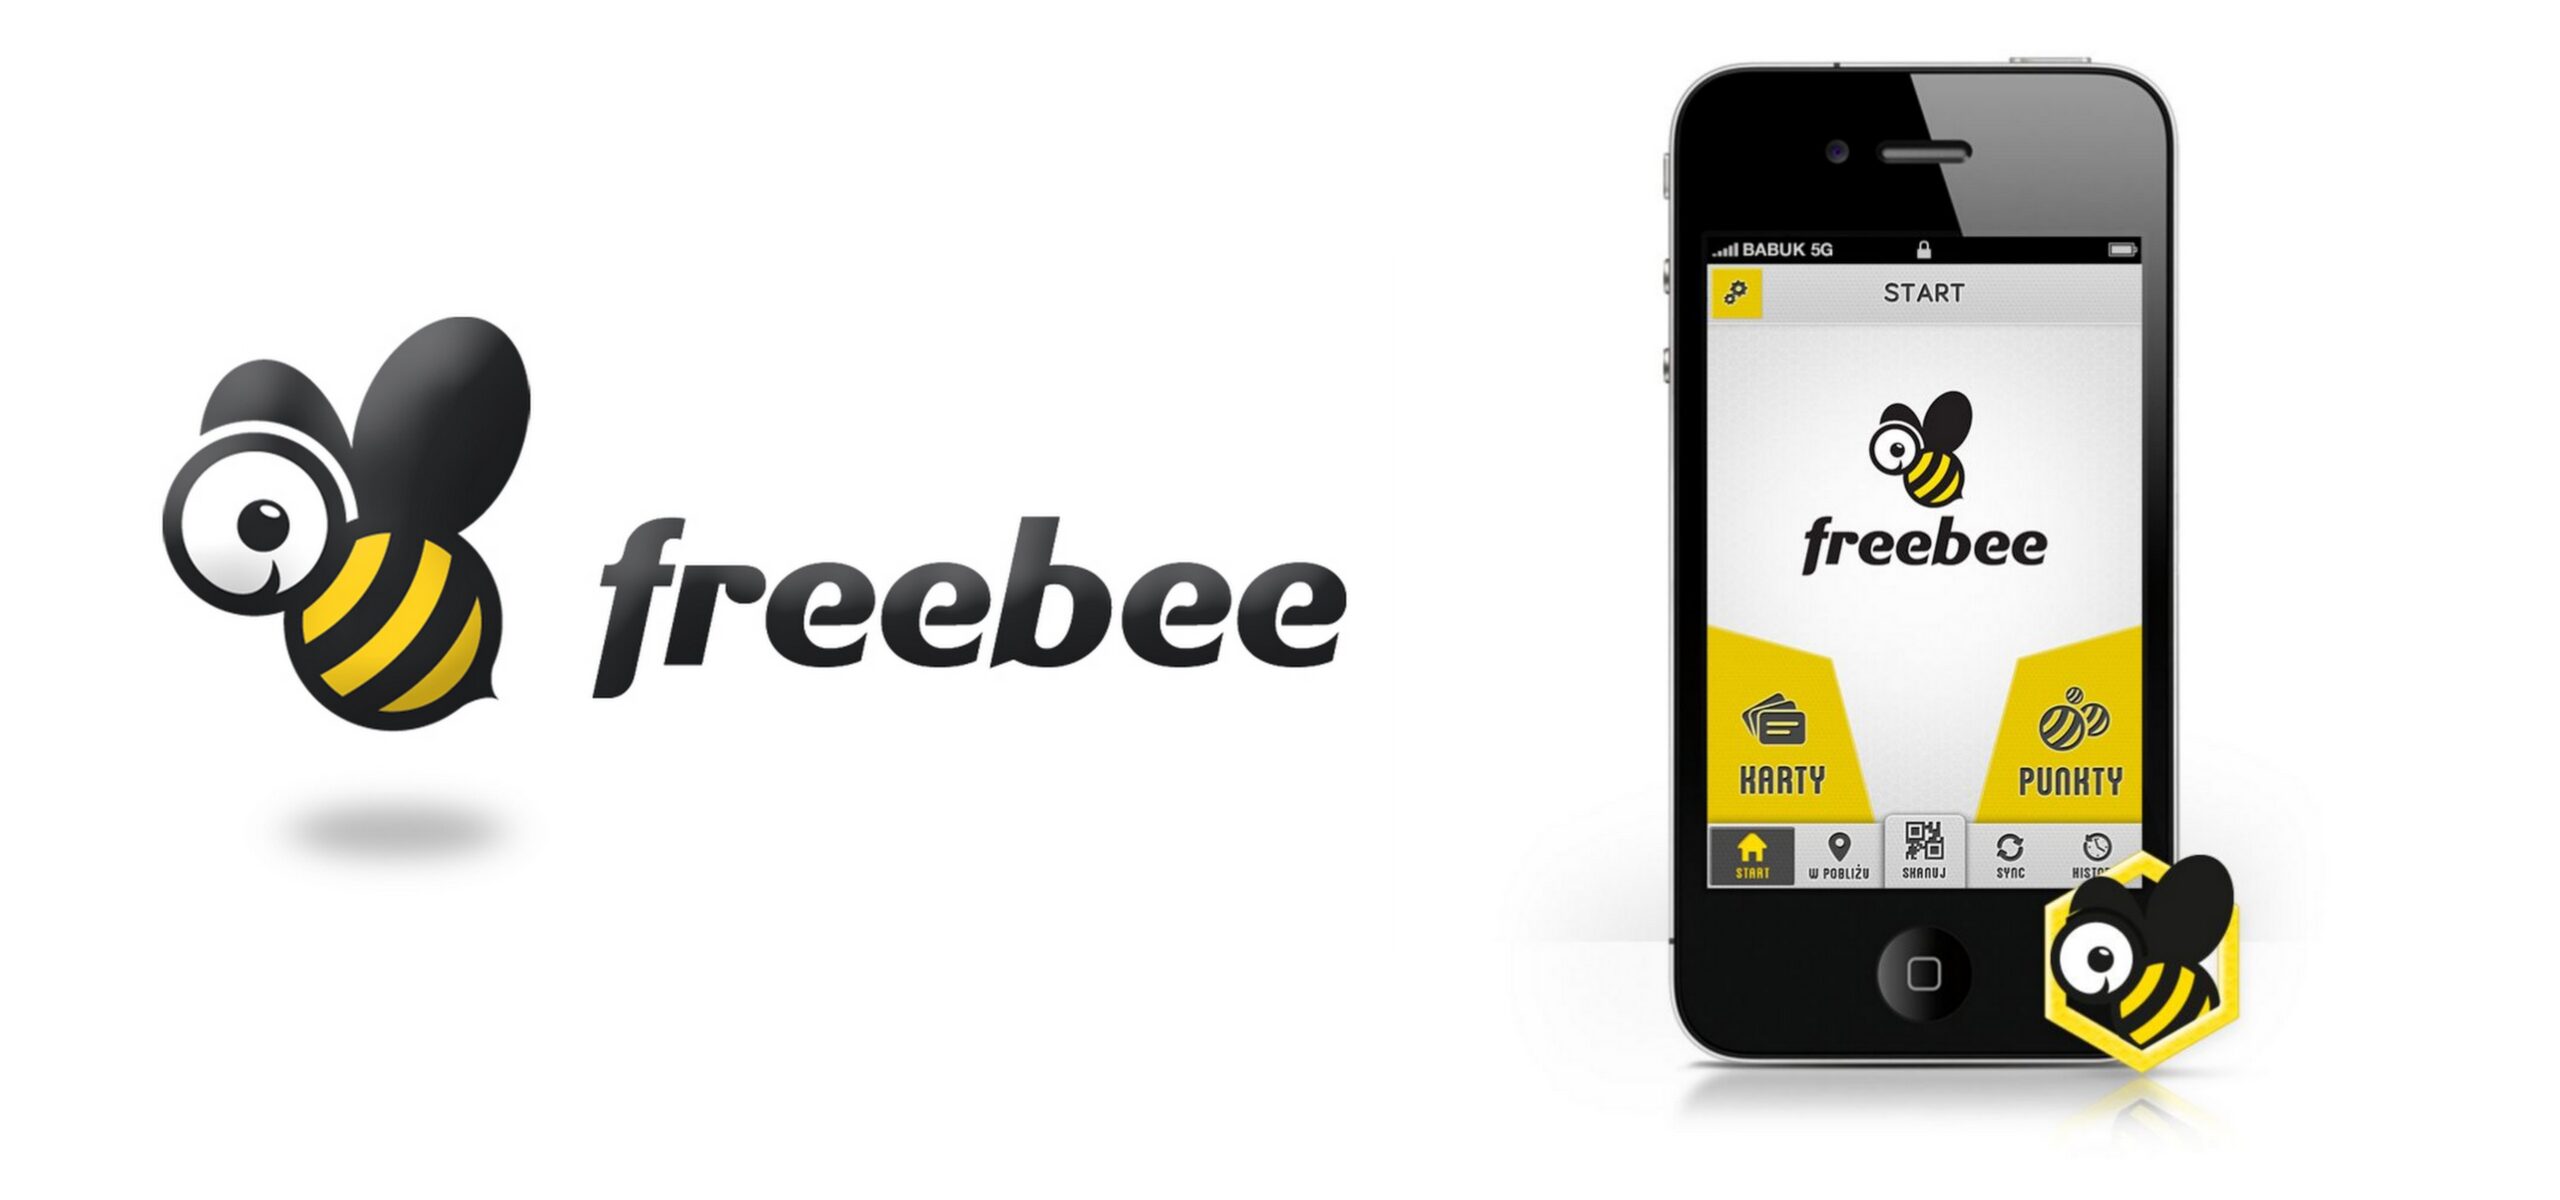 Freebee z nowym klientem 5.10.15. Mediarun Com Freebee scaled